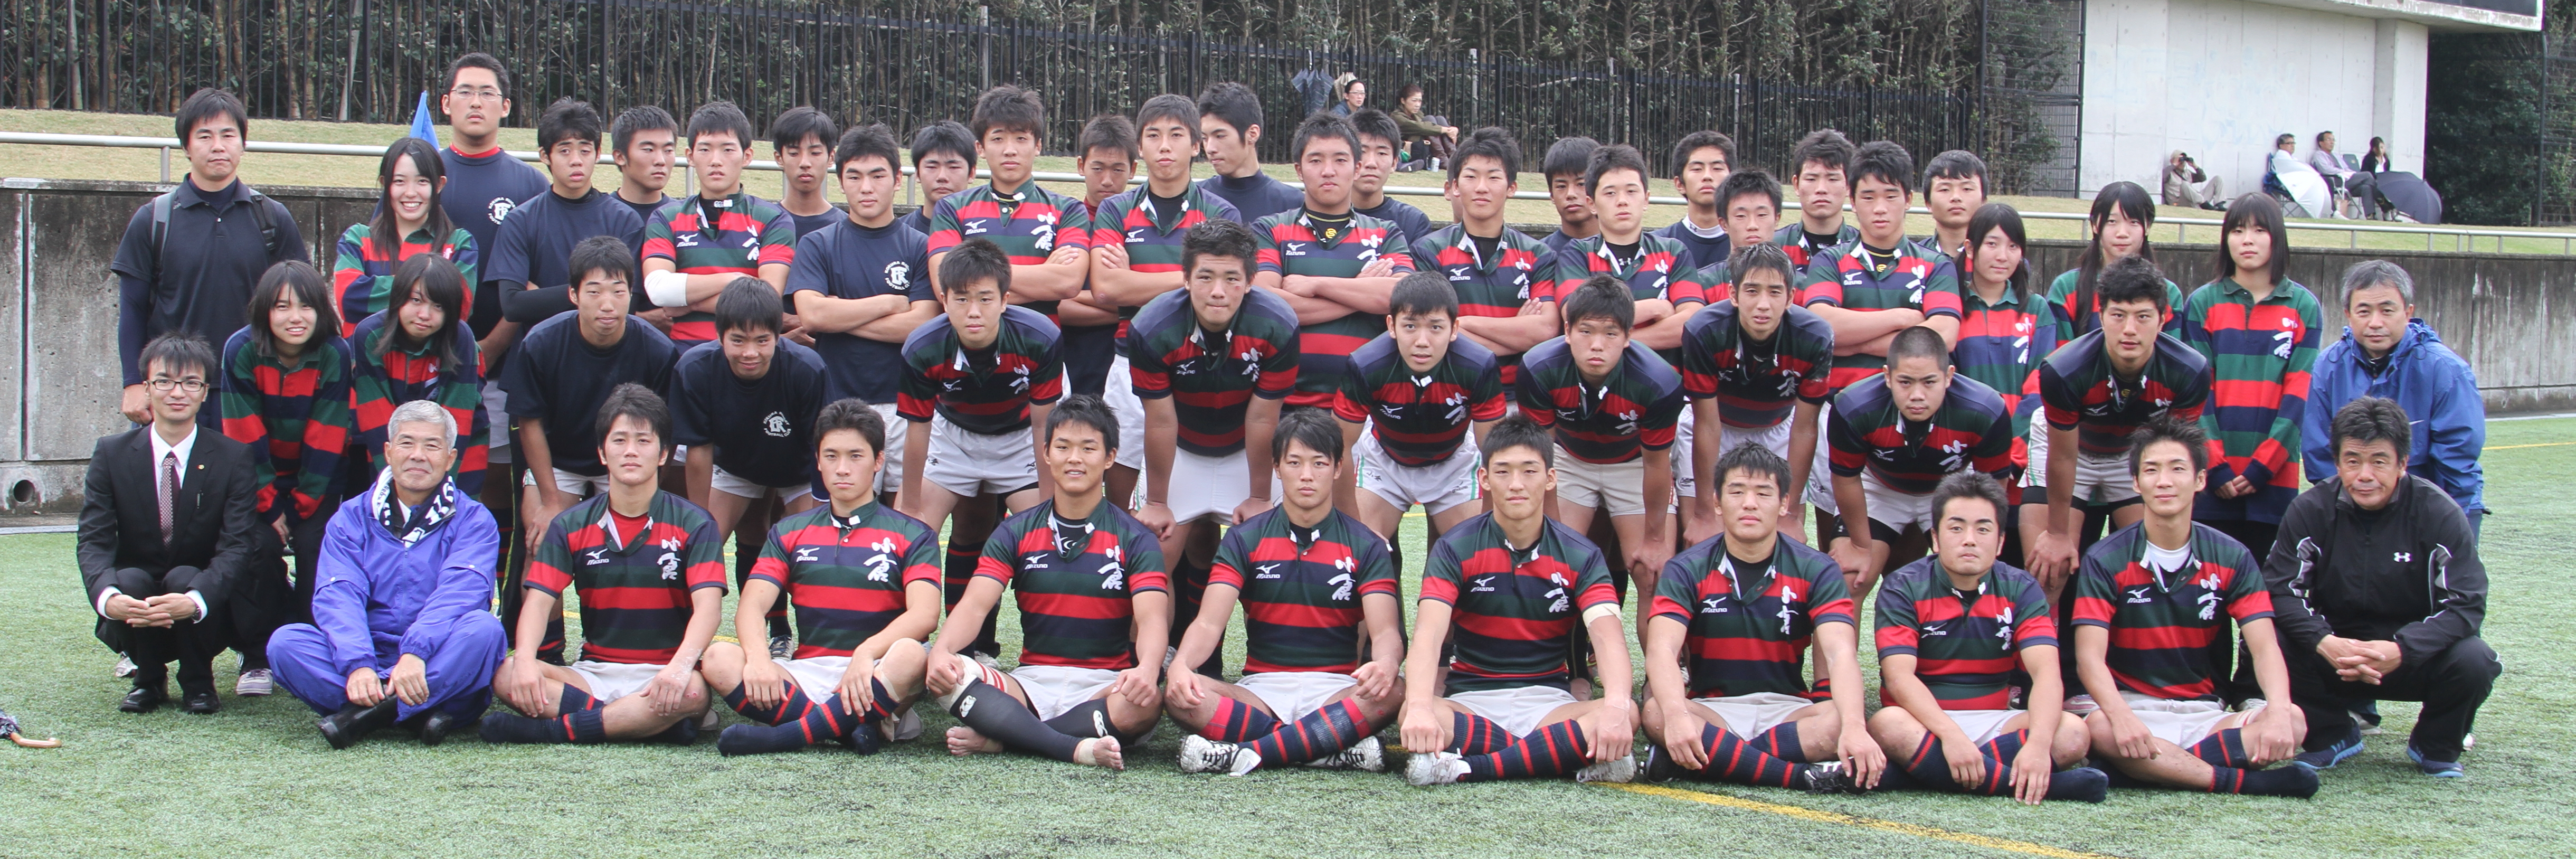 http://kokura-rugby.sakura.ne.jp/2011.11.6-4-20-A.JPG